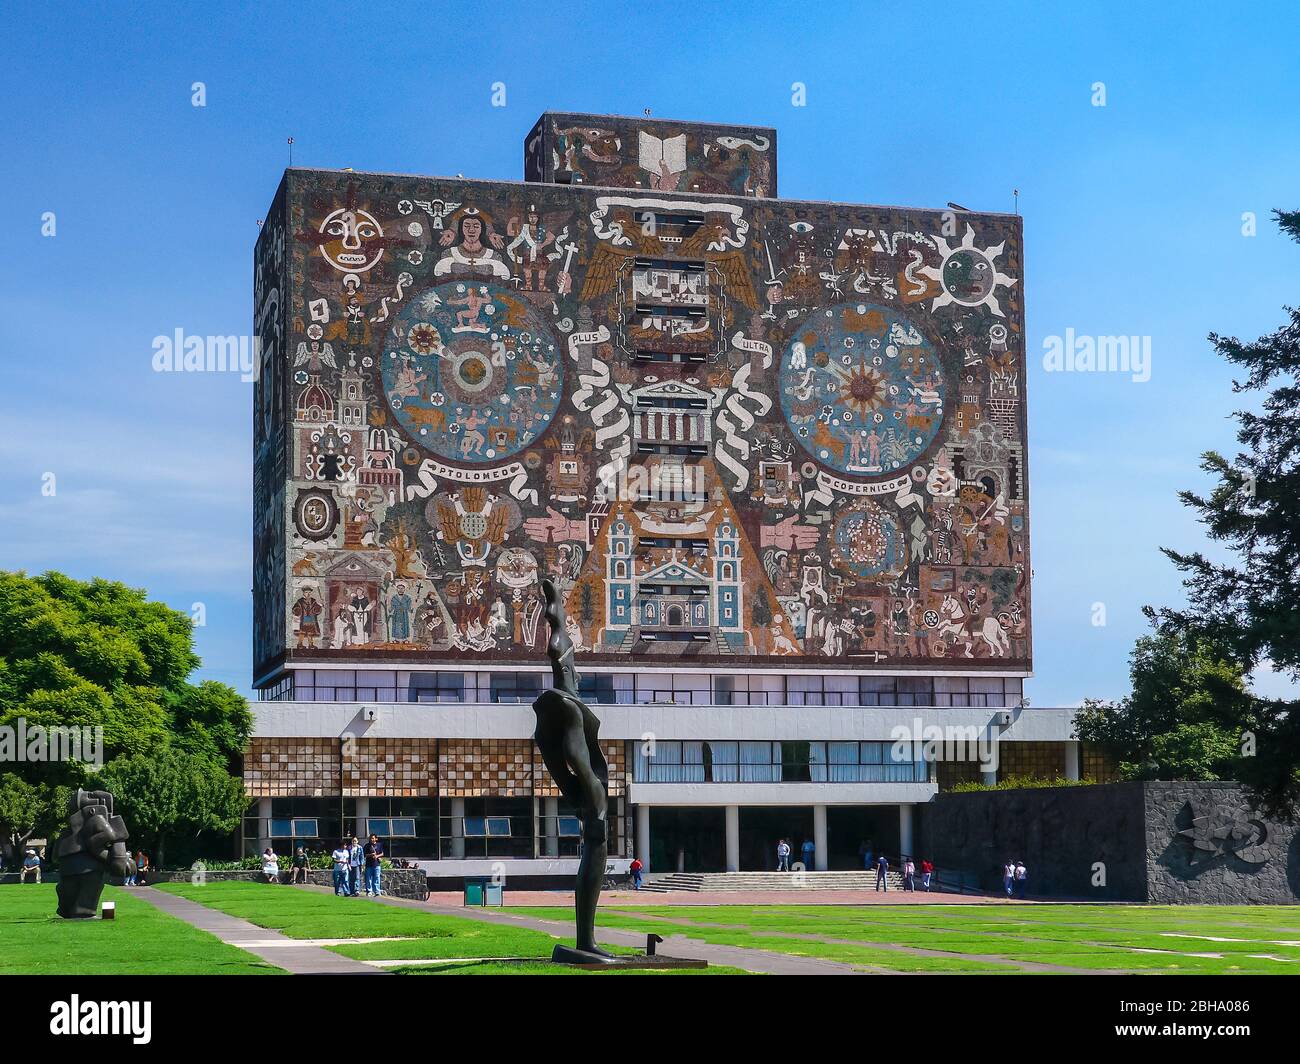 UNAM University (Universidad Nacional Autónoma de México) in Mexico City Stock Photo